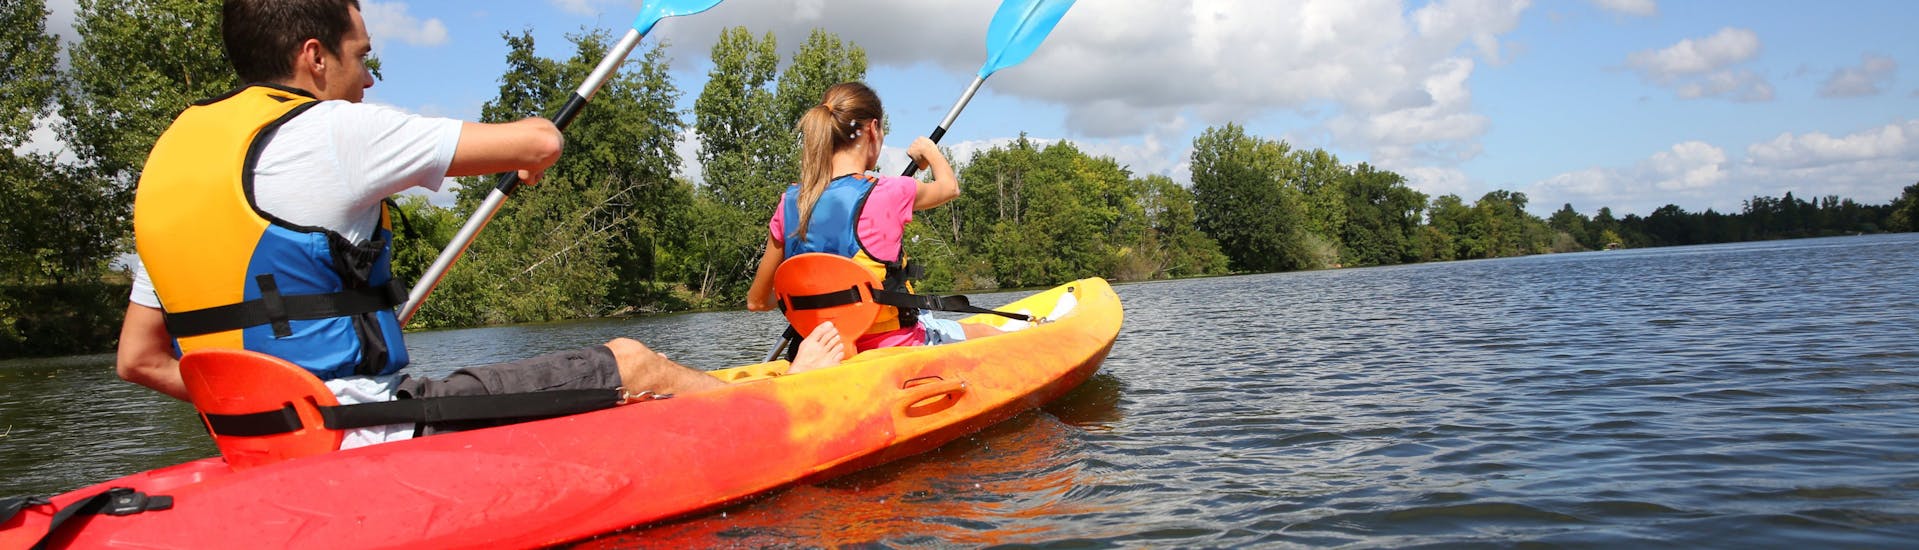 Kayak e canoa facile a Chalonnes-sur-Loire - Loire River.